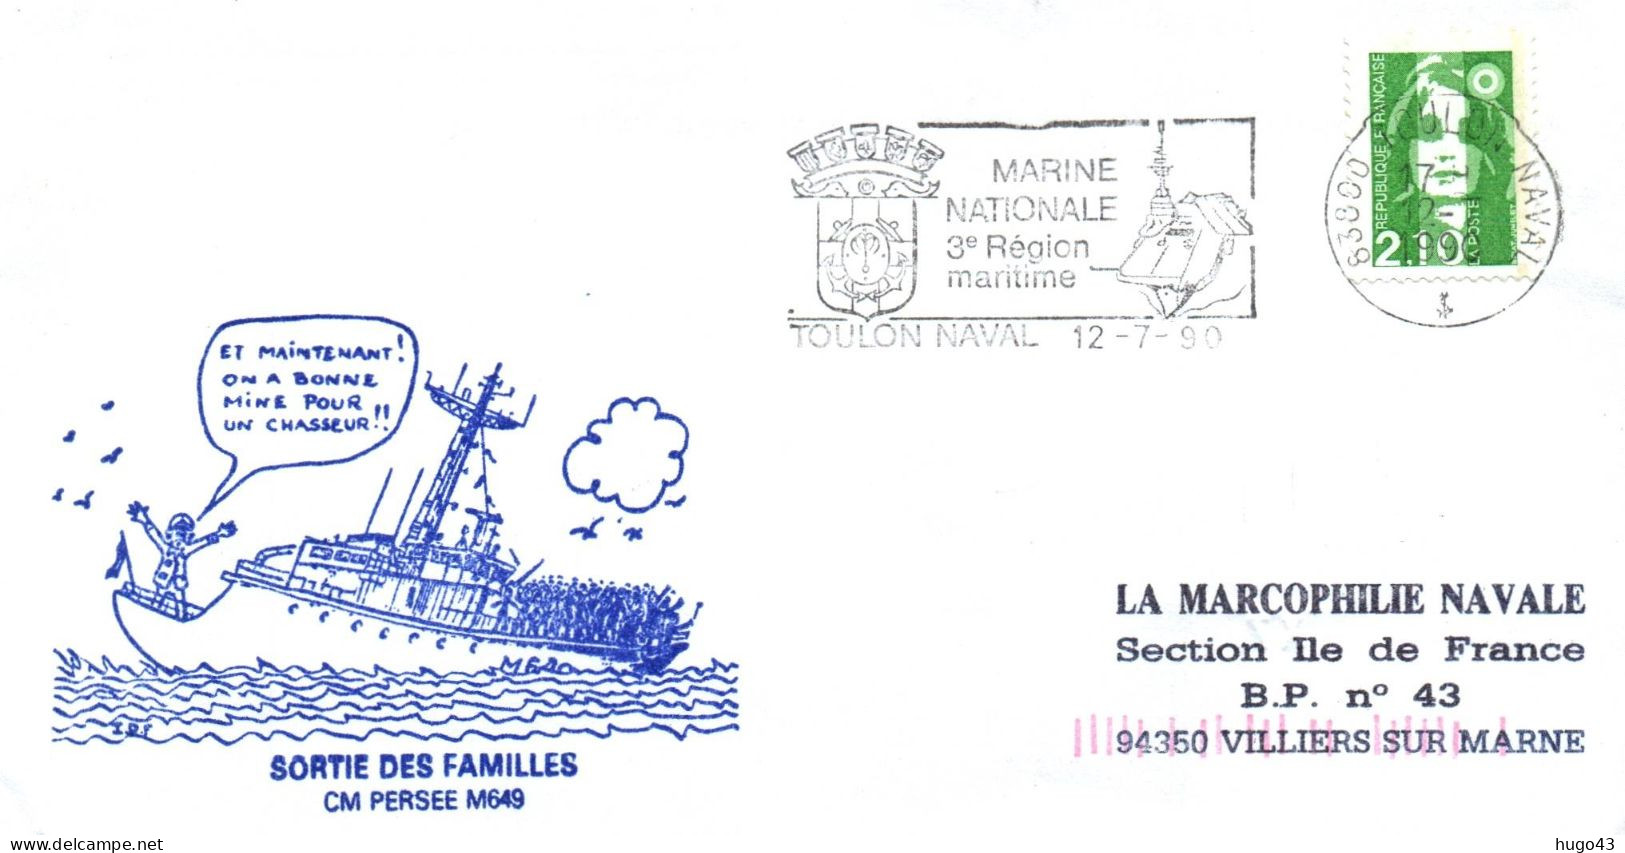 ENVELOPPE AVEC CACHET CM PERSEE M649 - SORTIE DES FAMILLES - TOULON NAVAL LE 12/7/90 - Scheepspost